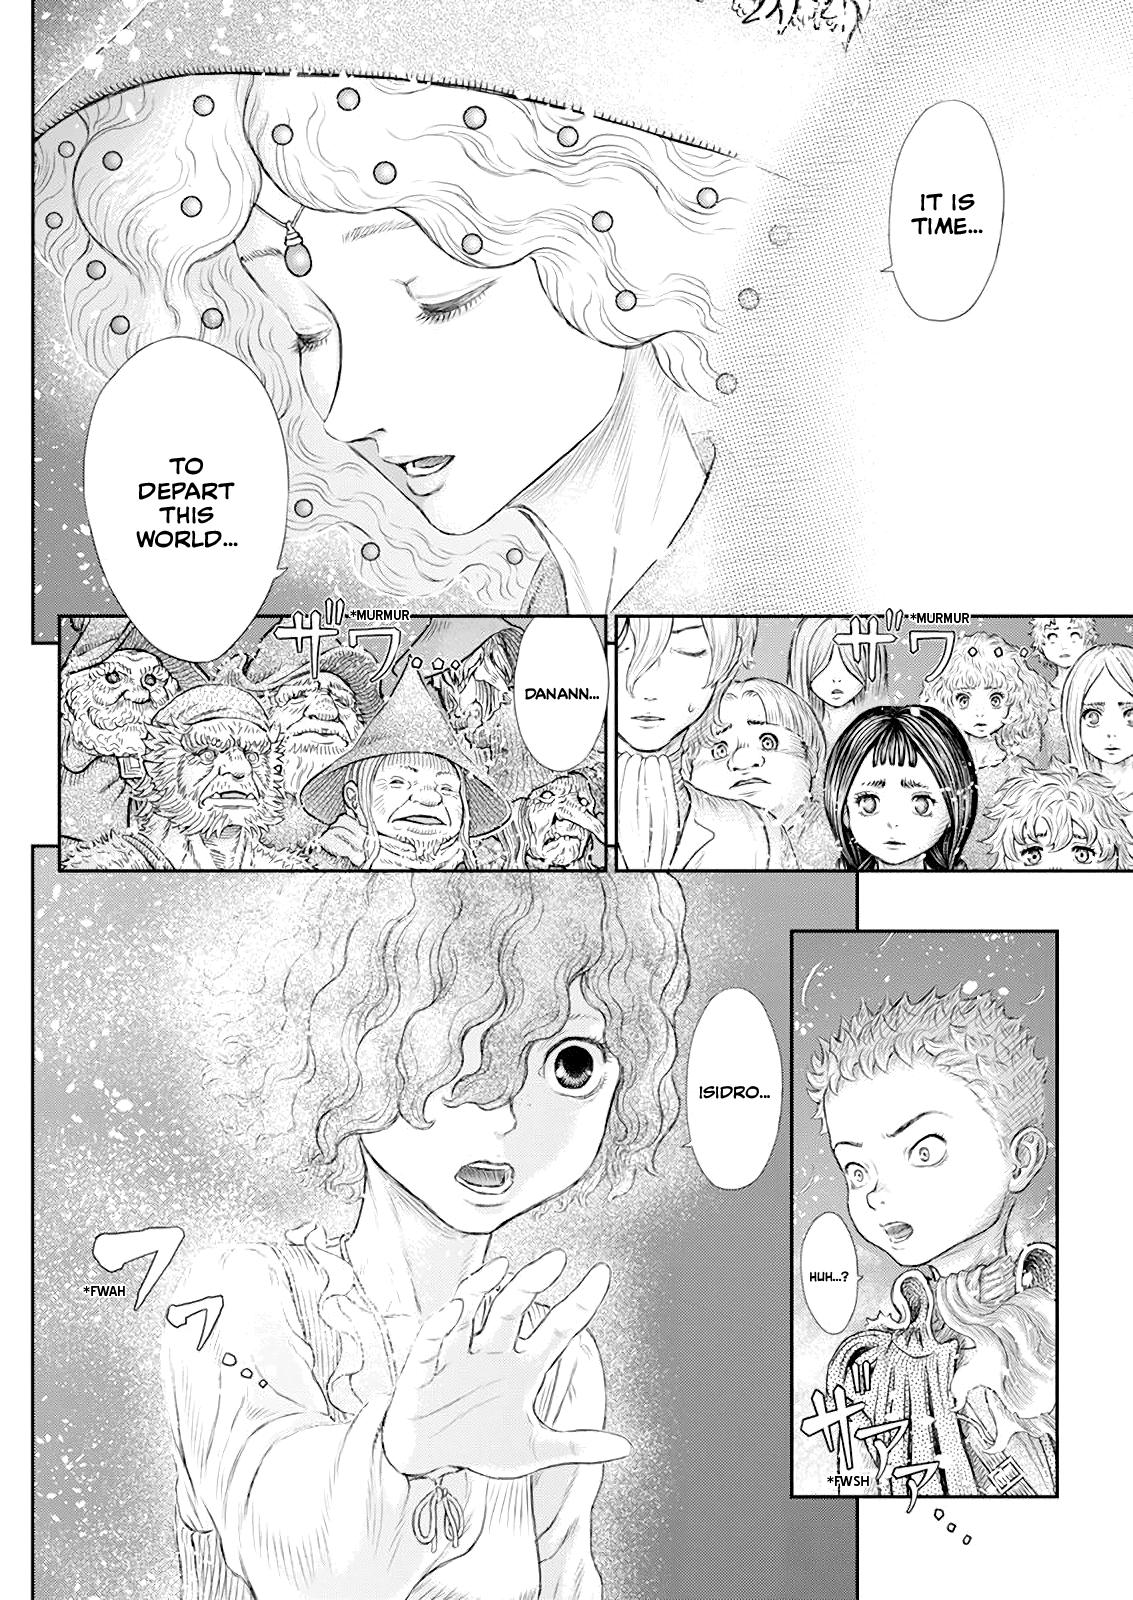 Berserk Manga Chapter 369 image 11